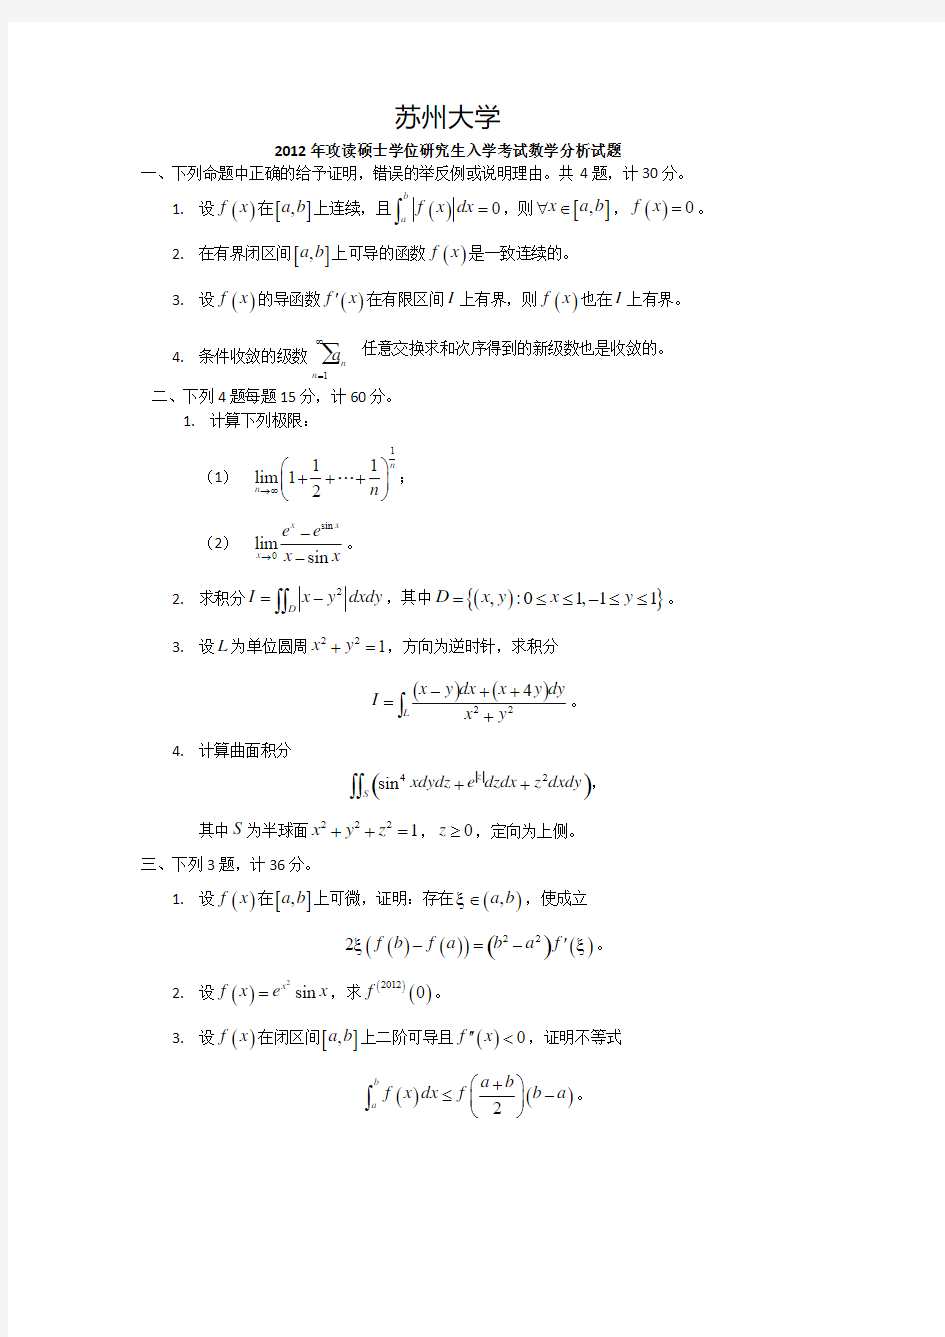 苏州大学数学分析试题集锦(2000-2012年)